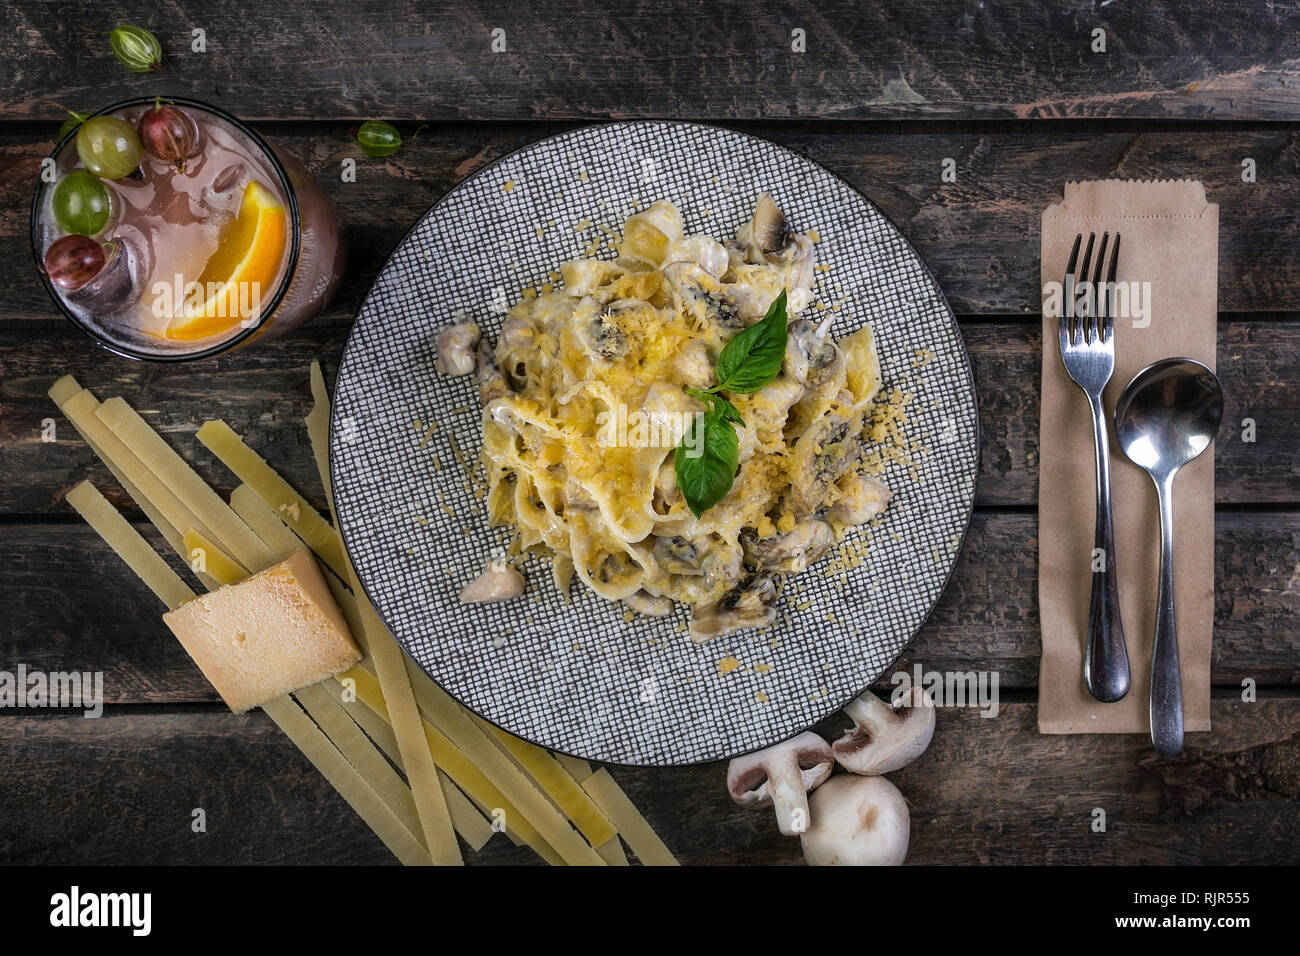 Les pâtes italiennes Les pâtes avec du fromage, poulet et champignons, servi sur la belle plaque en céramique avec les couverts. Décorées avec un verre de boissons Banque D'Images